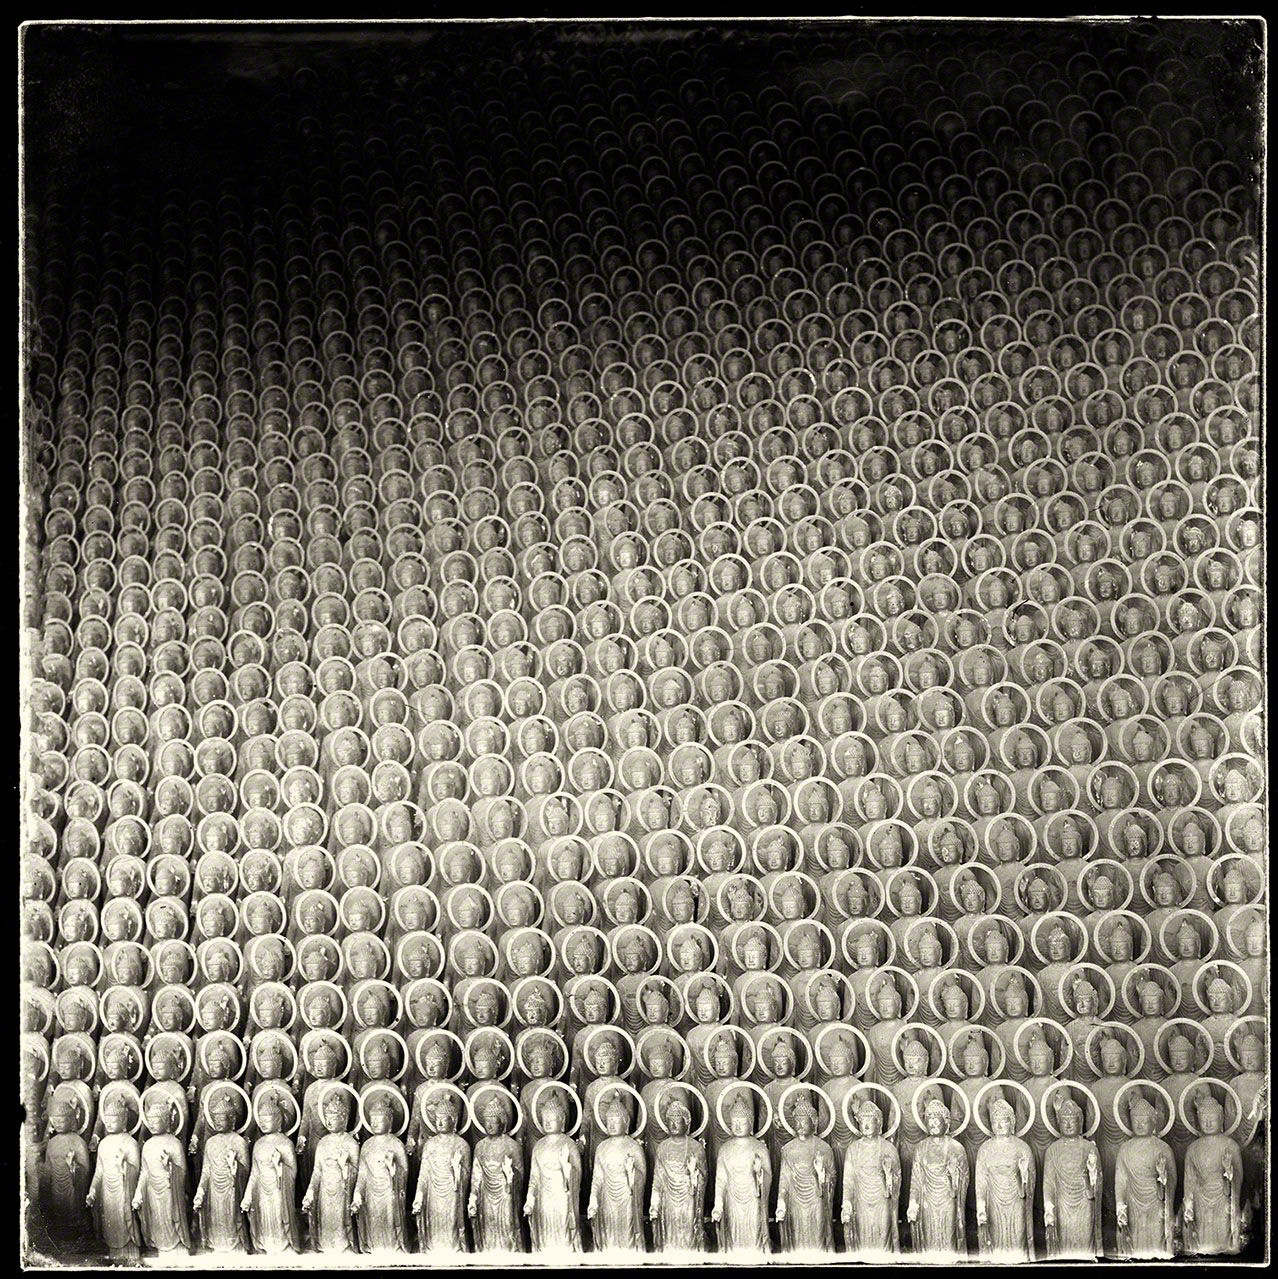 منظر لـ 84 ألف تمثال بوذي في معبد إيتشيباتا ياكوشي في إيزومو. يأتي المصلون إلى المعبد للعلاج من الأمراض التي تصيب العين.